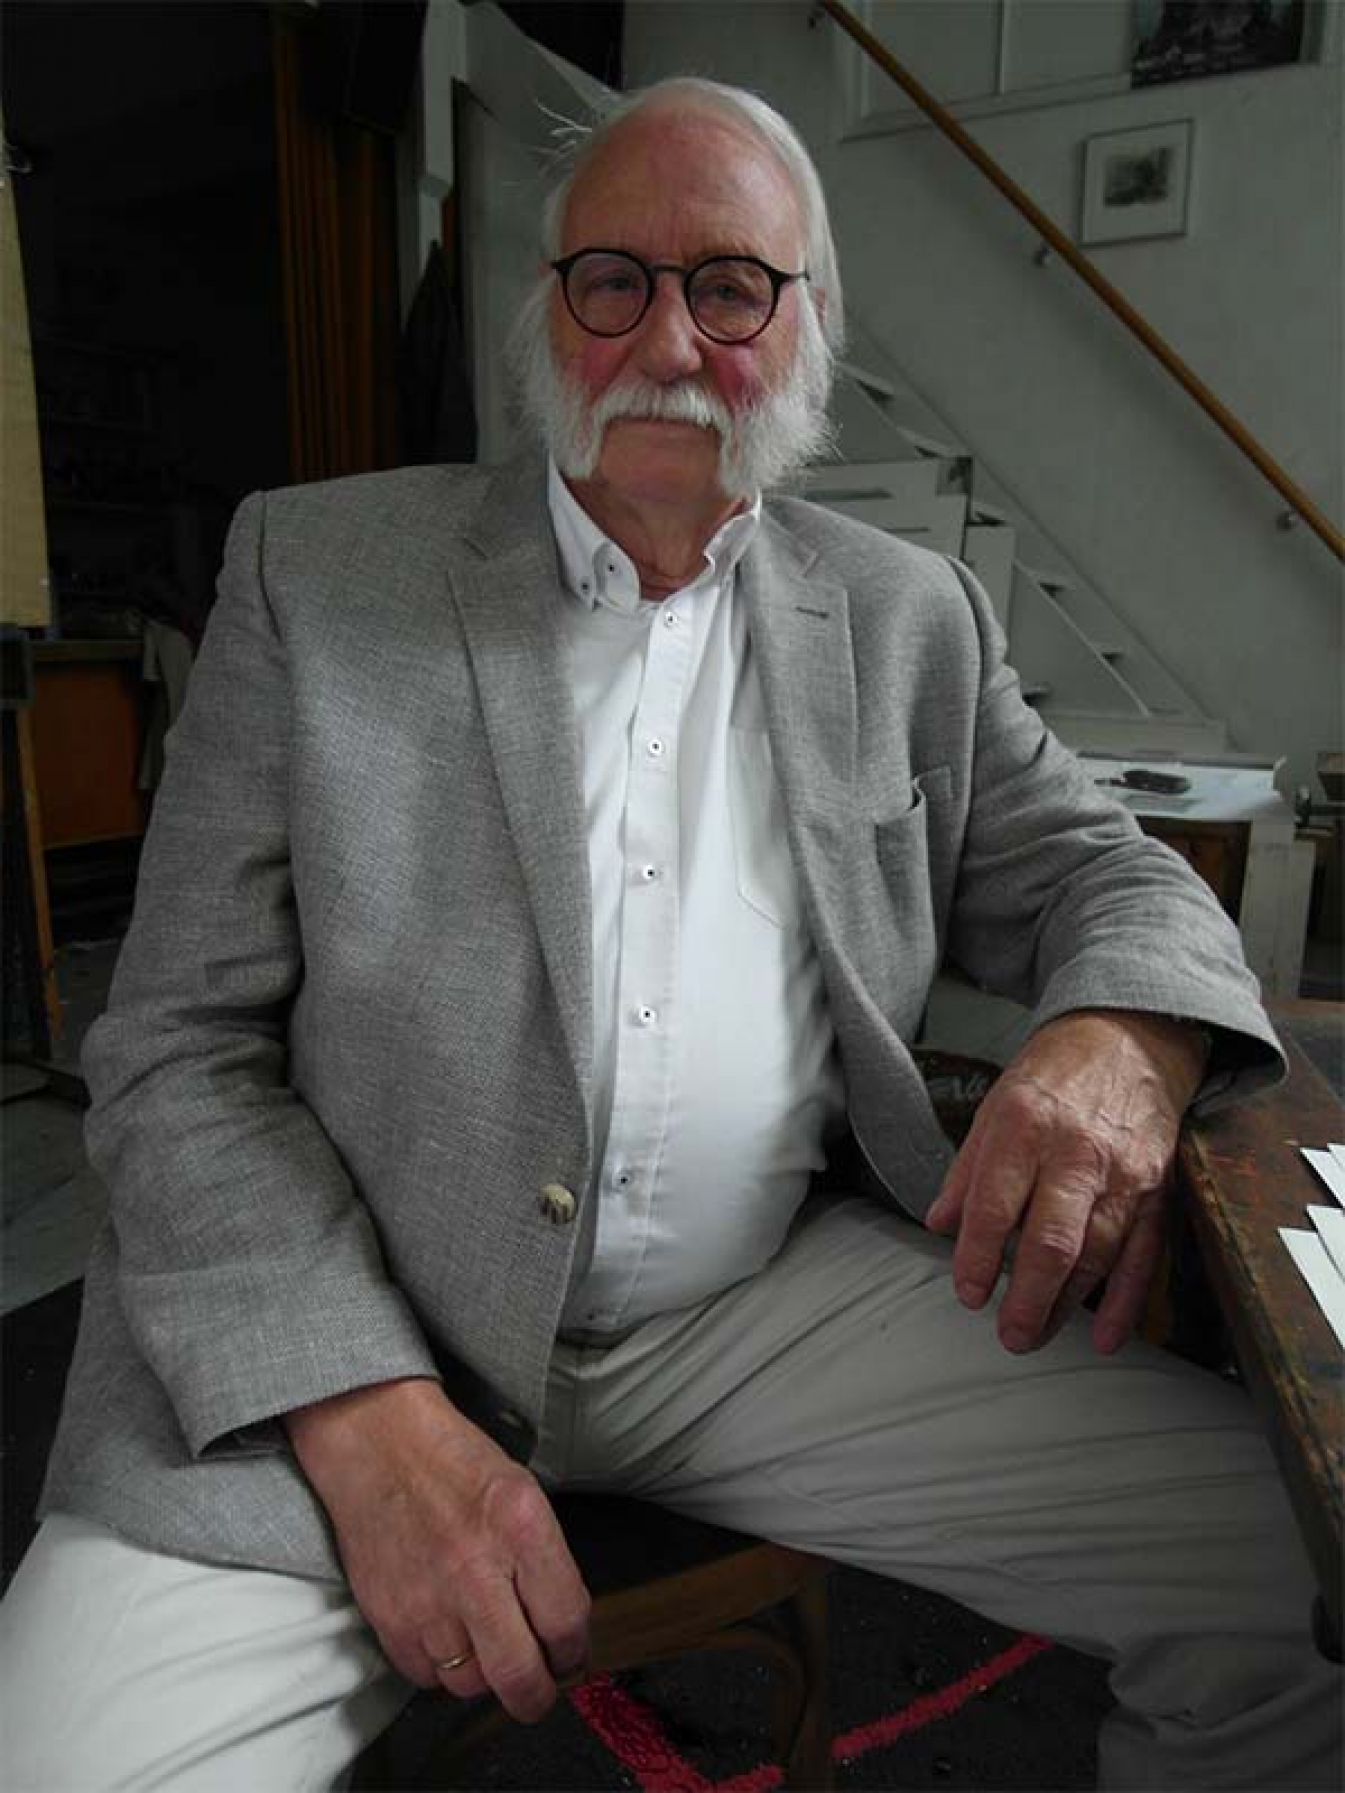 Portret Jana Wagnera. Starszy mężczyzna z siwymi włosami oraz brodą. Ubrany w szarą marynarkę i spodnie oraz białą koszulę. Siedzi na krześle w swoim mieszkaniu.